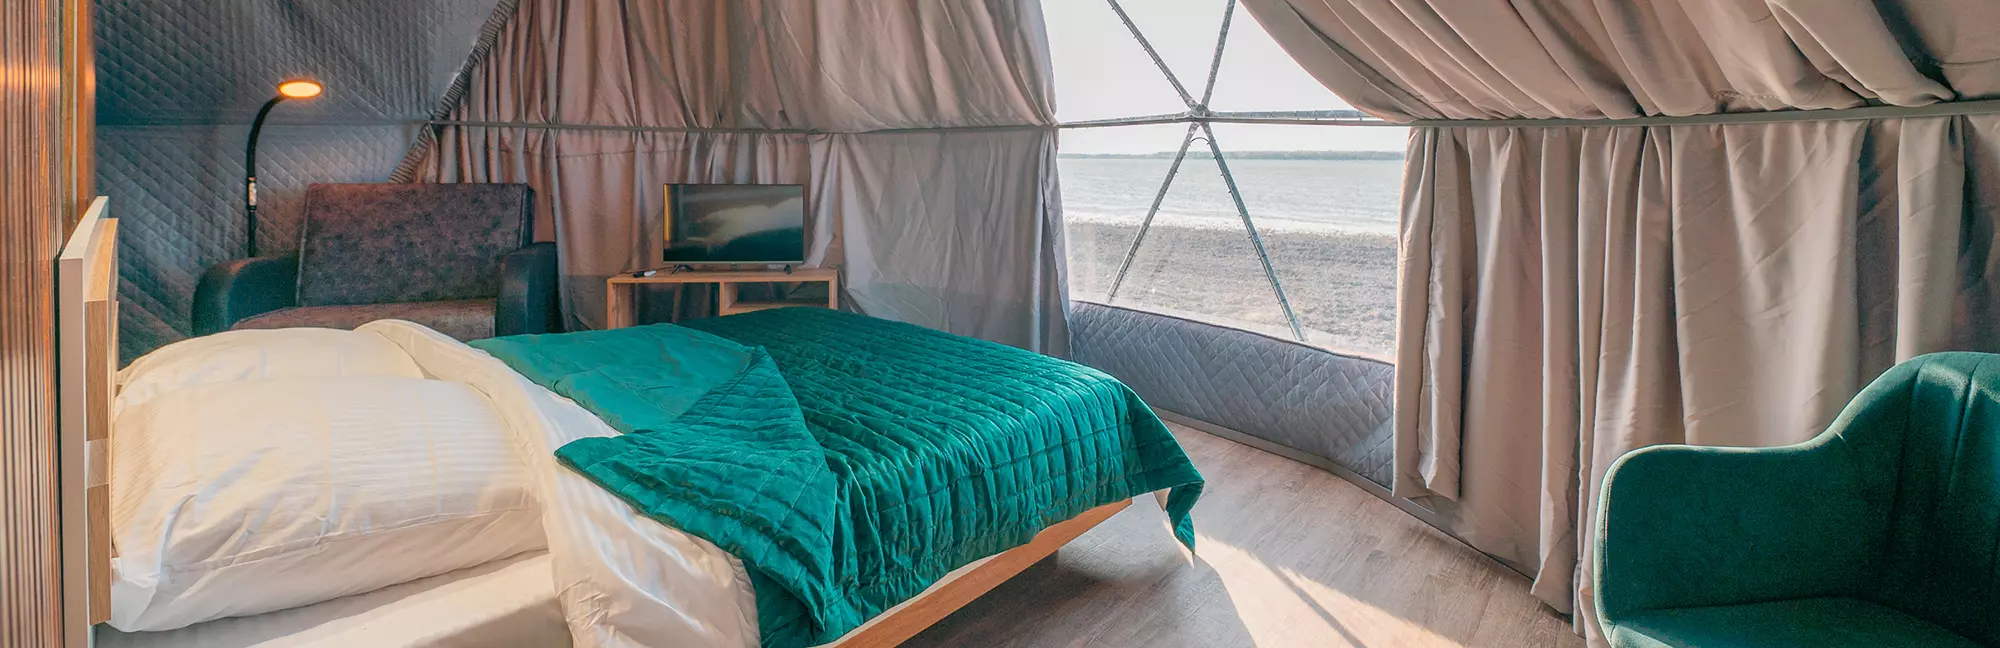 На смену домикам и палаткам пришли сферы: где отдохнуть в купольном отеле в Сибири